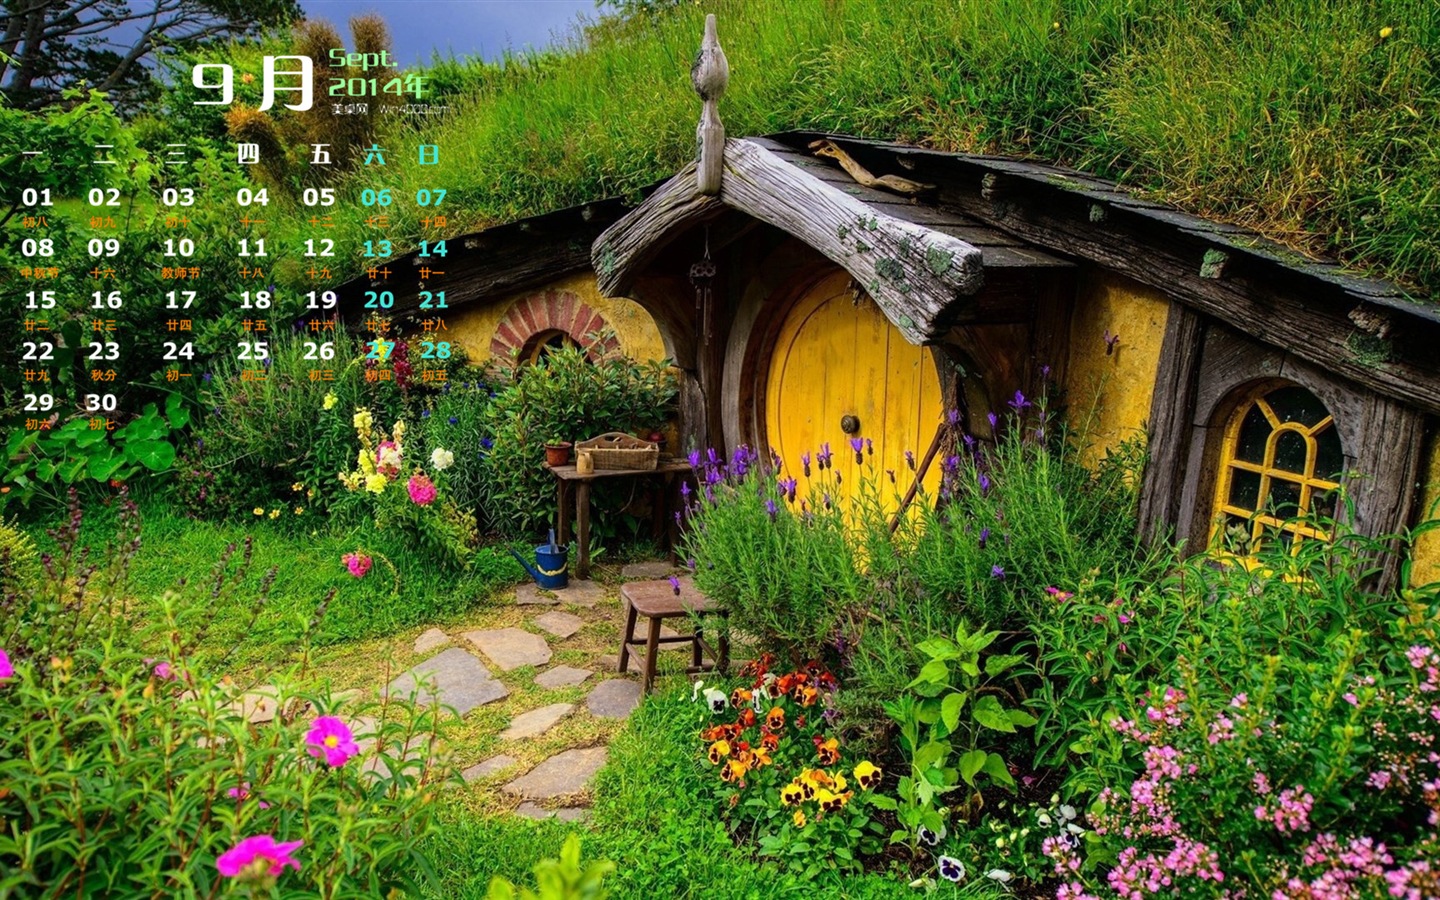 09. 2014 Kalendář tapety (1) #11 - 1440x900